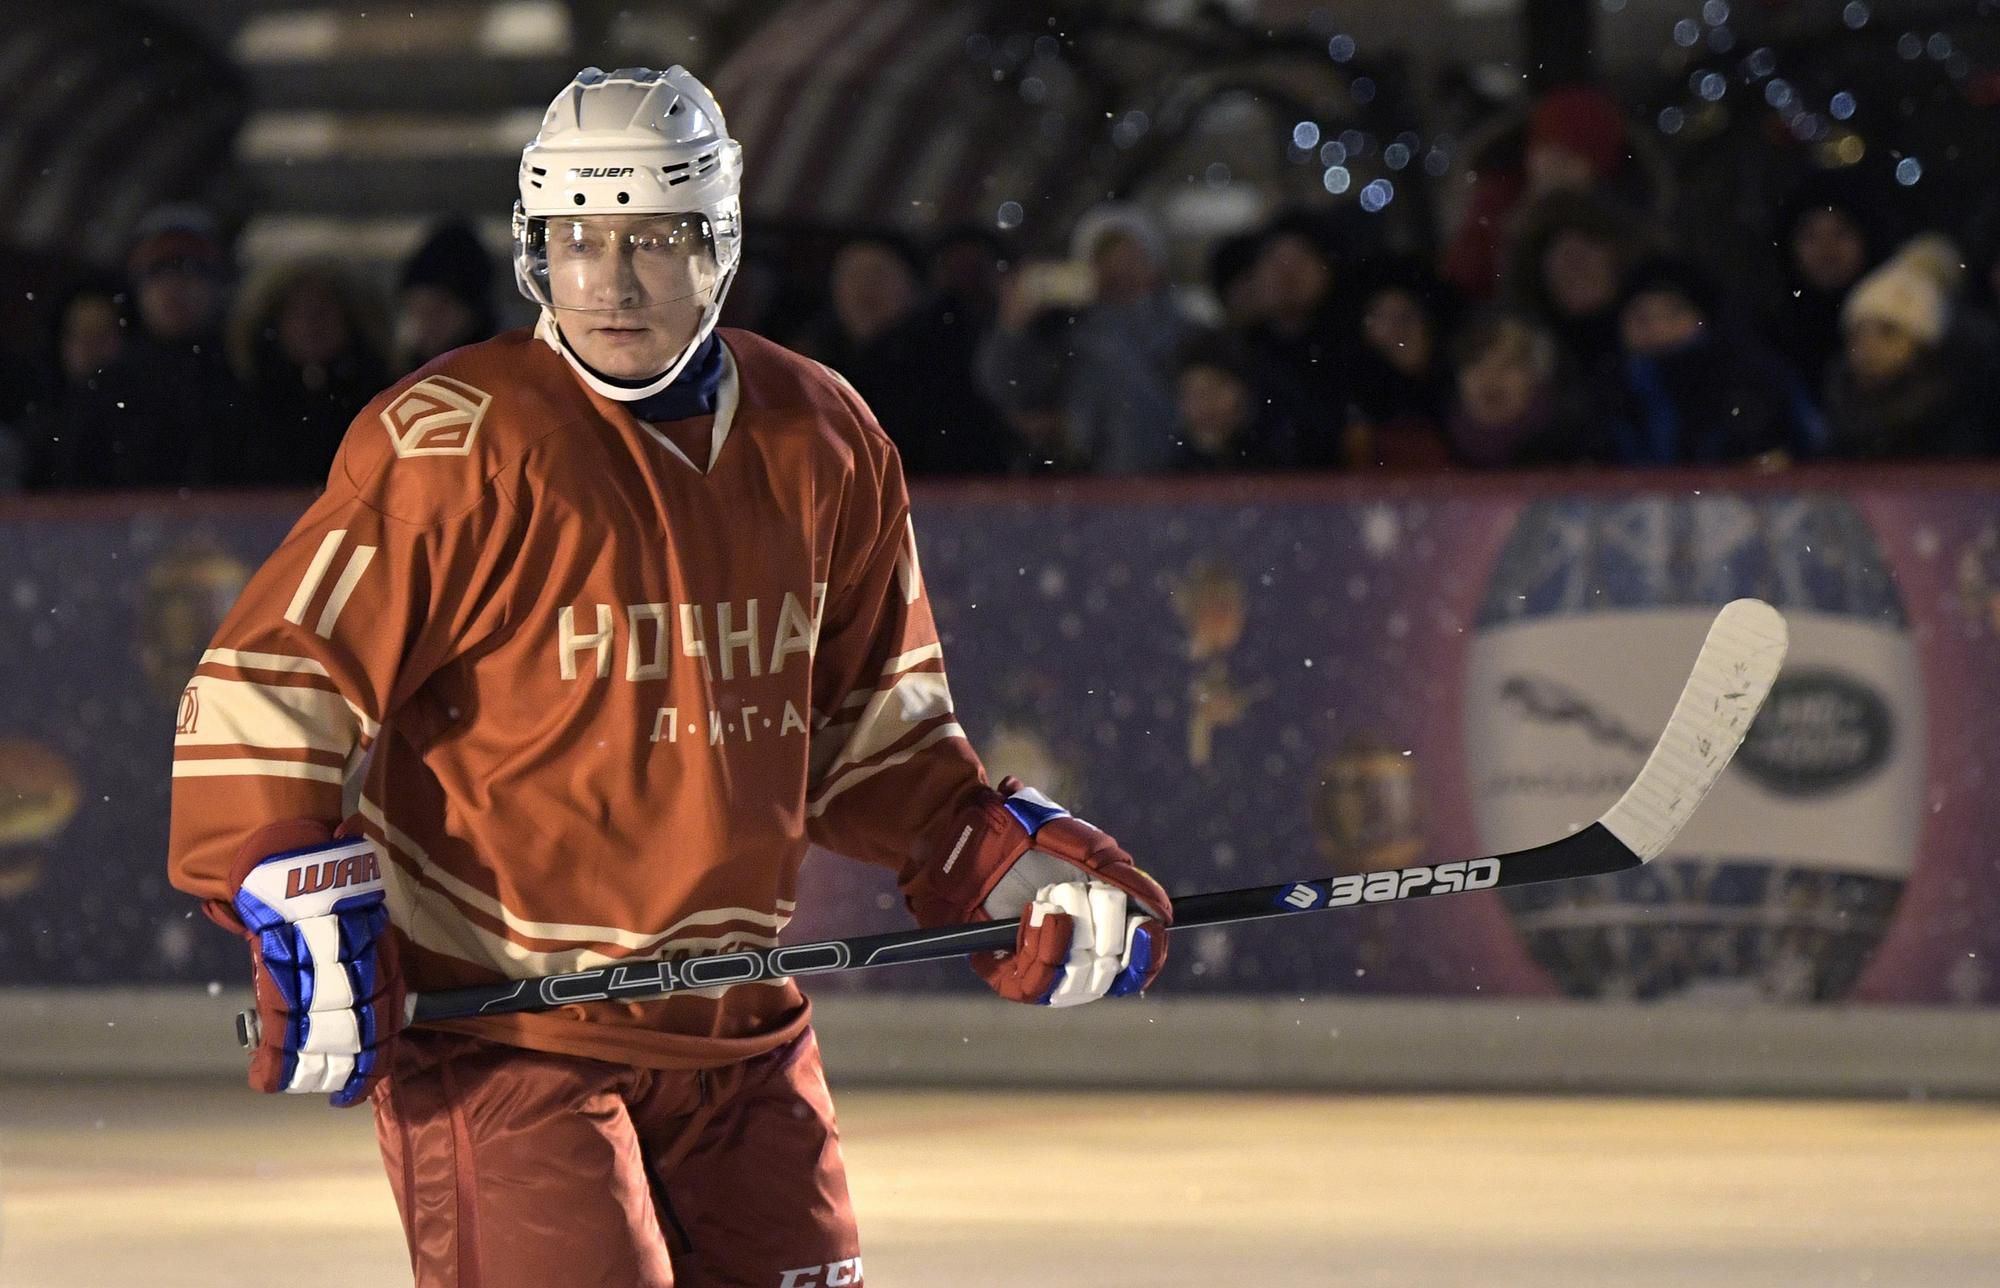 Ruský prezident Vladimír Putin opäť predviedol svoje hokejové umenie.